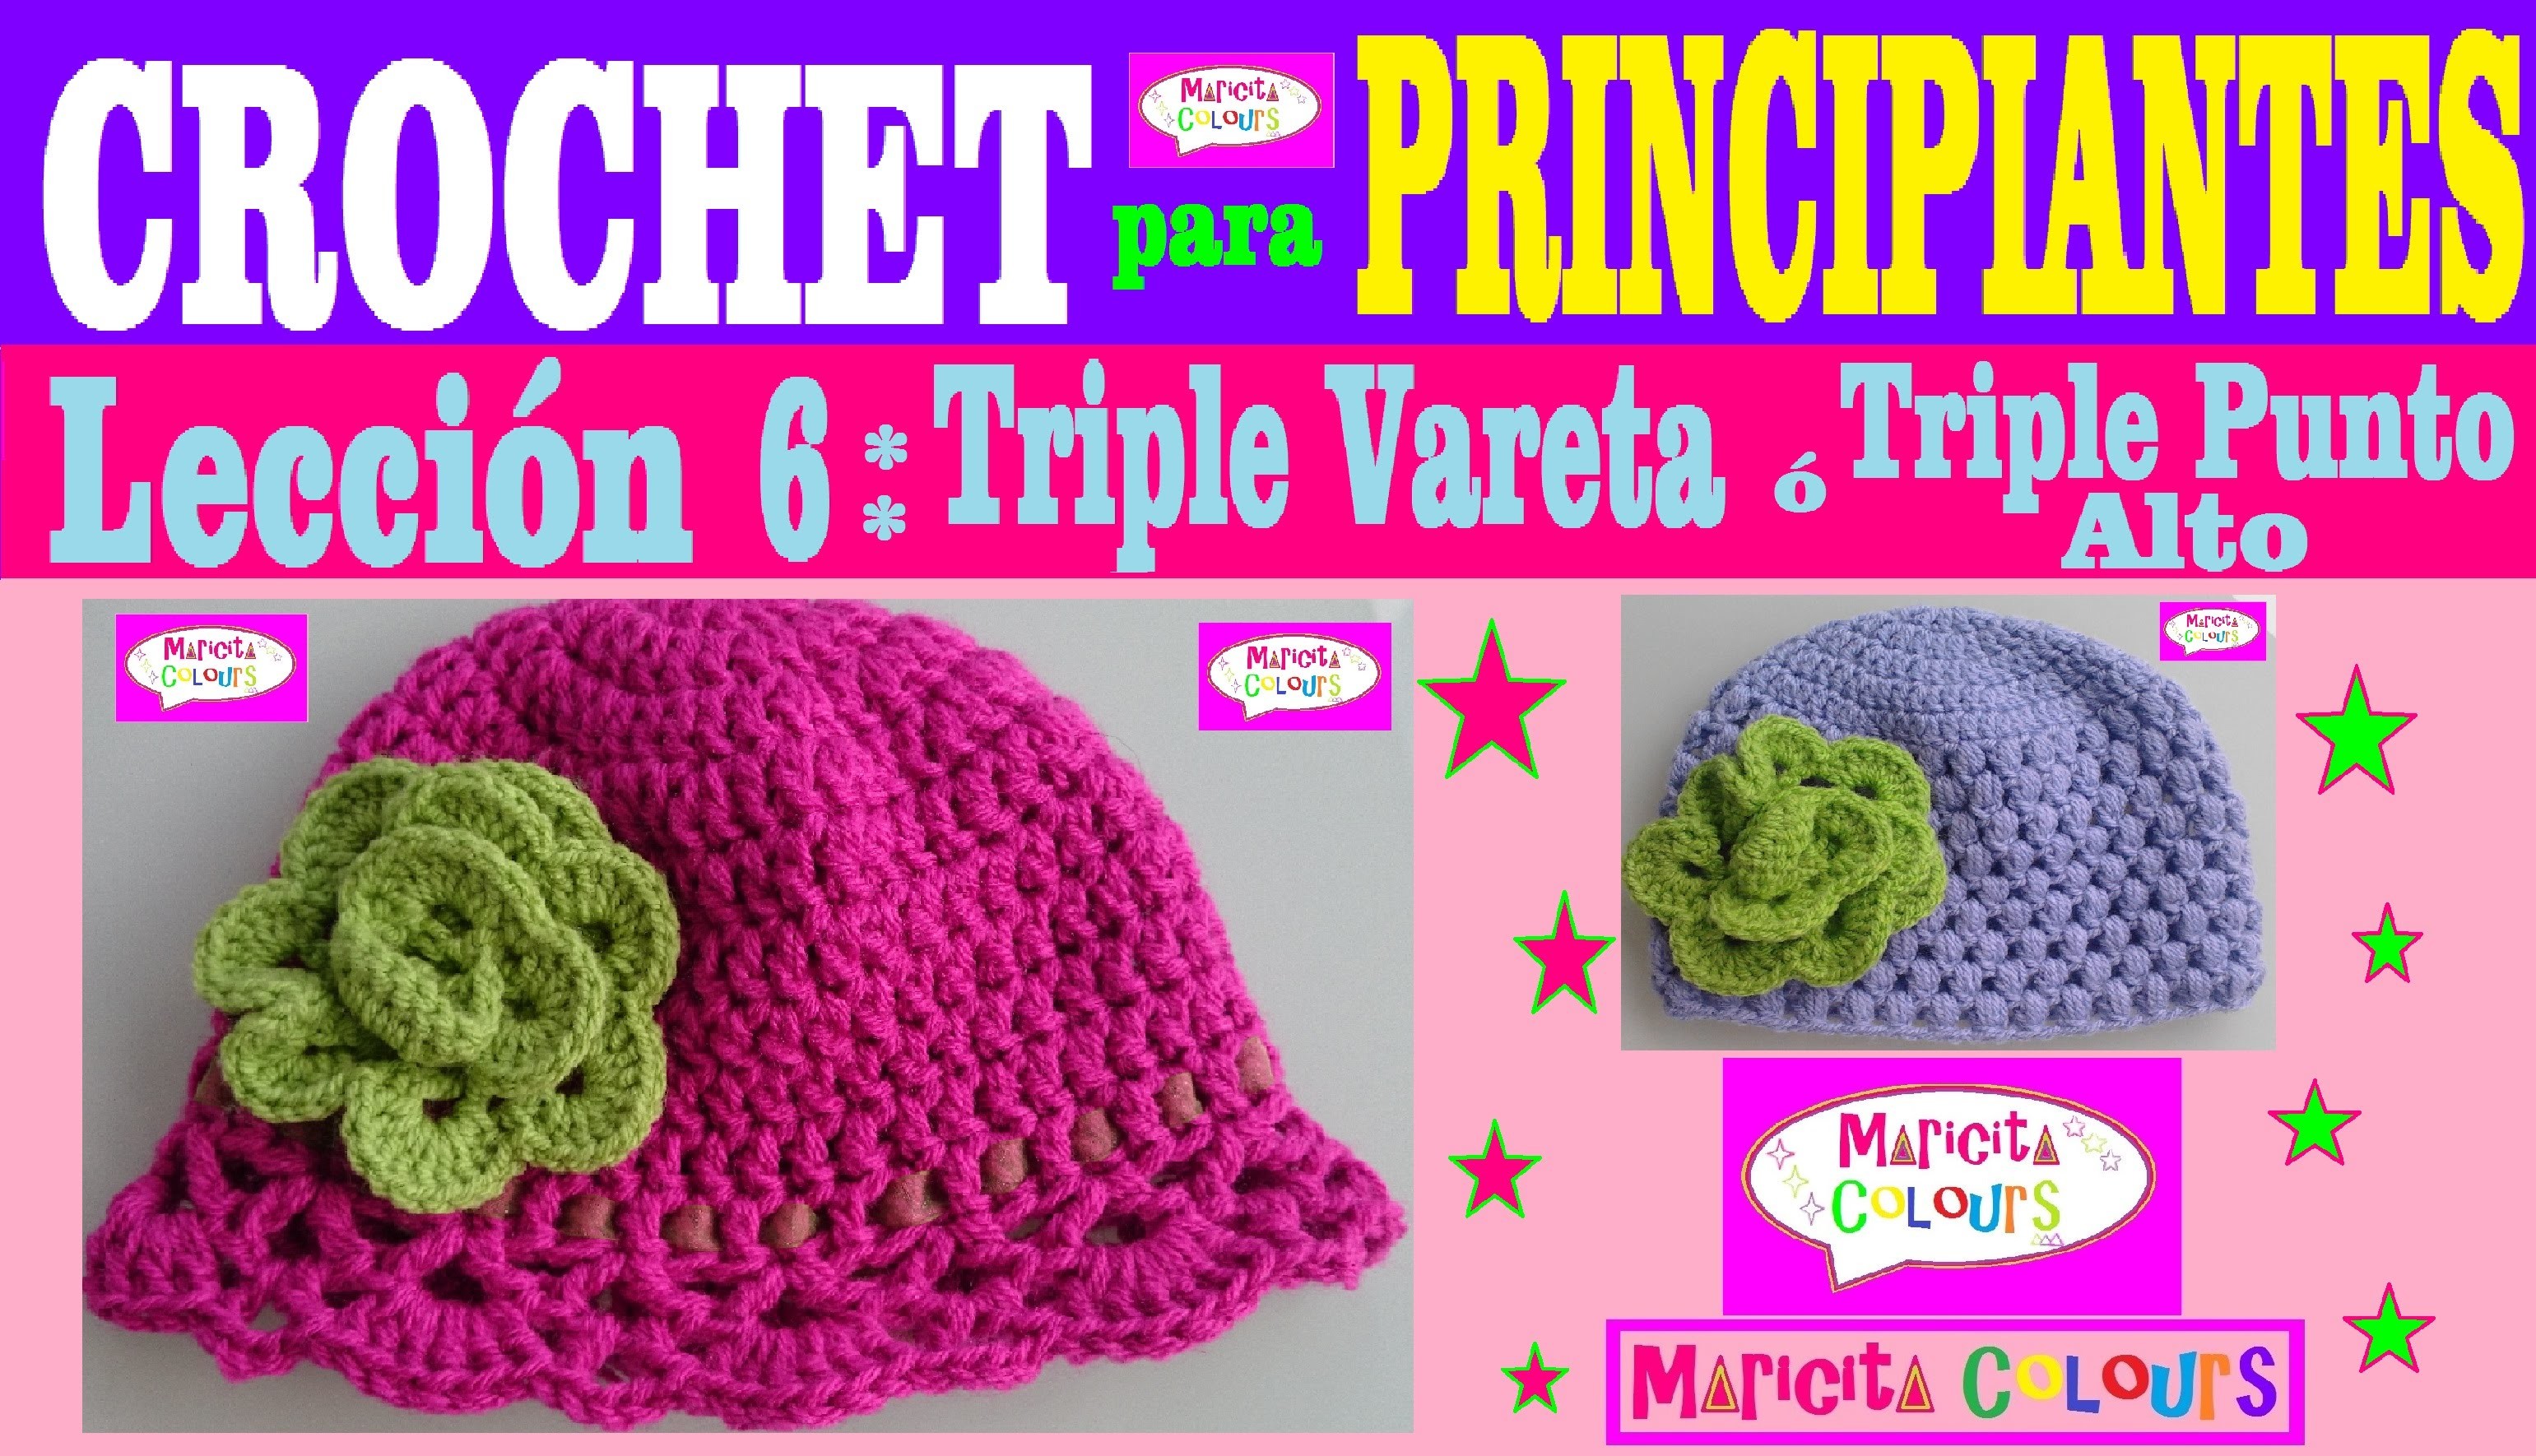 Crochet para Principiantes (Lección 6) "Triple Vareta" por Maricita Colours